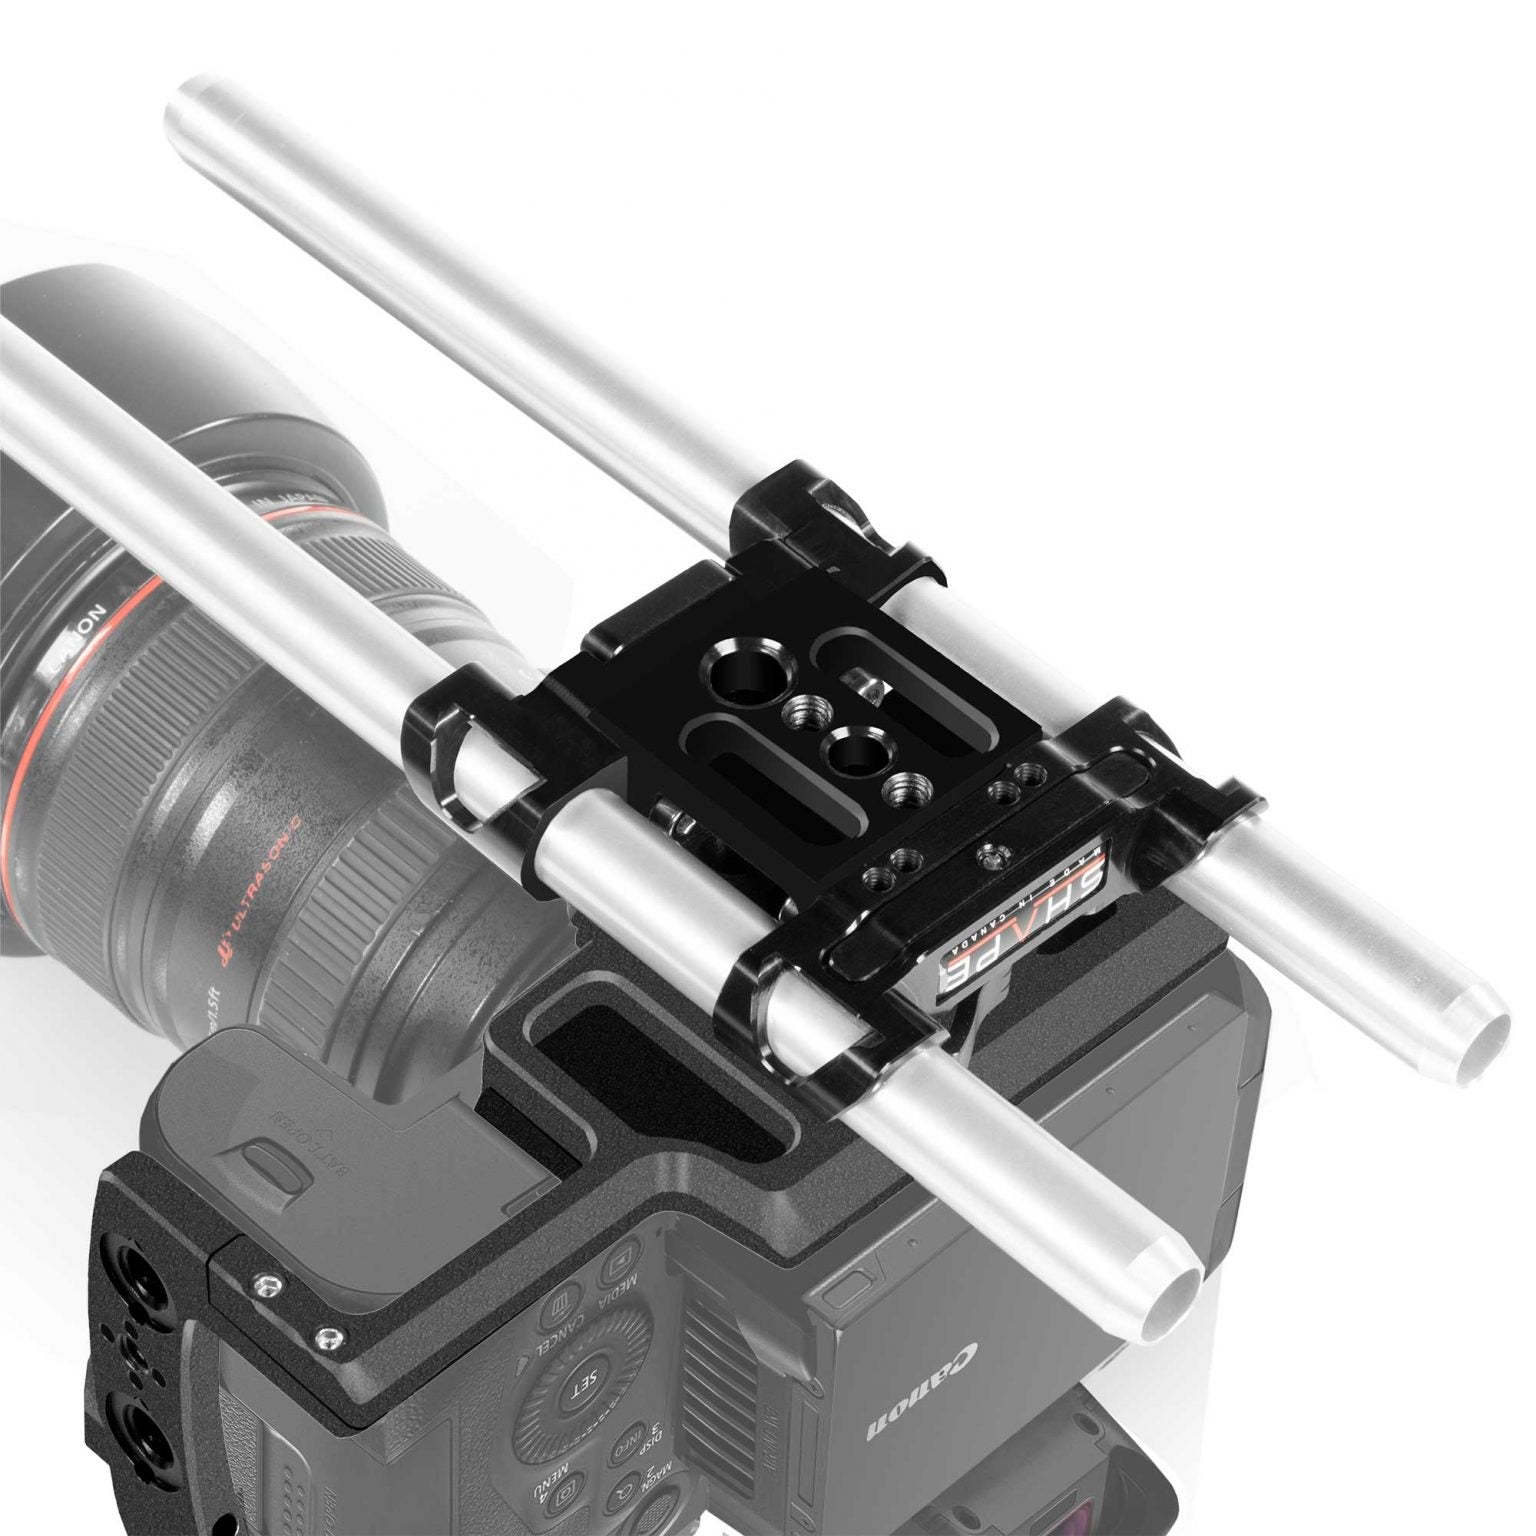 SHAPE Shoulder Mount Kit for Canon R5C/R5/R6 - SHAPE wlb